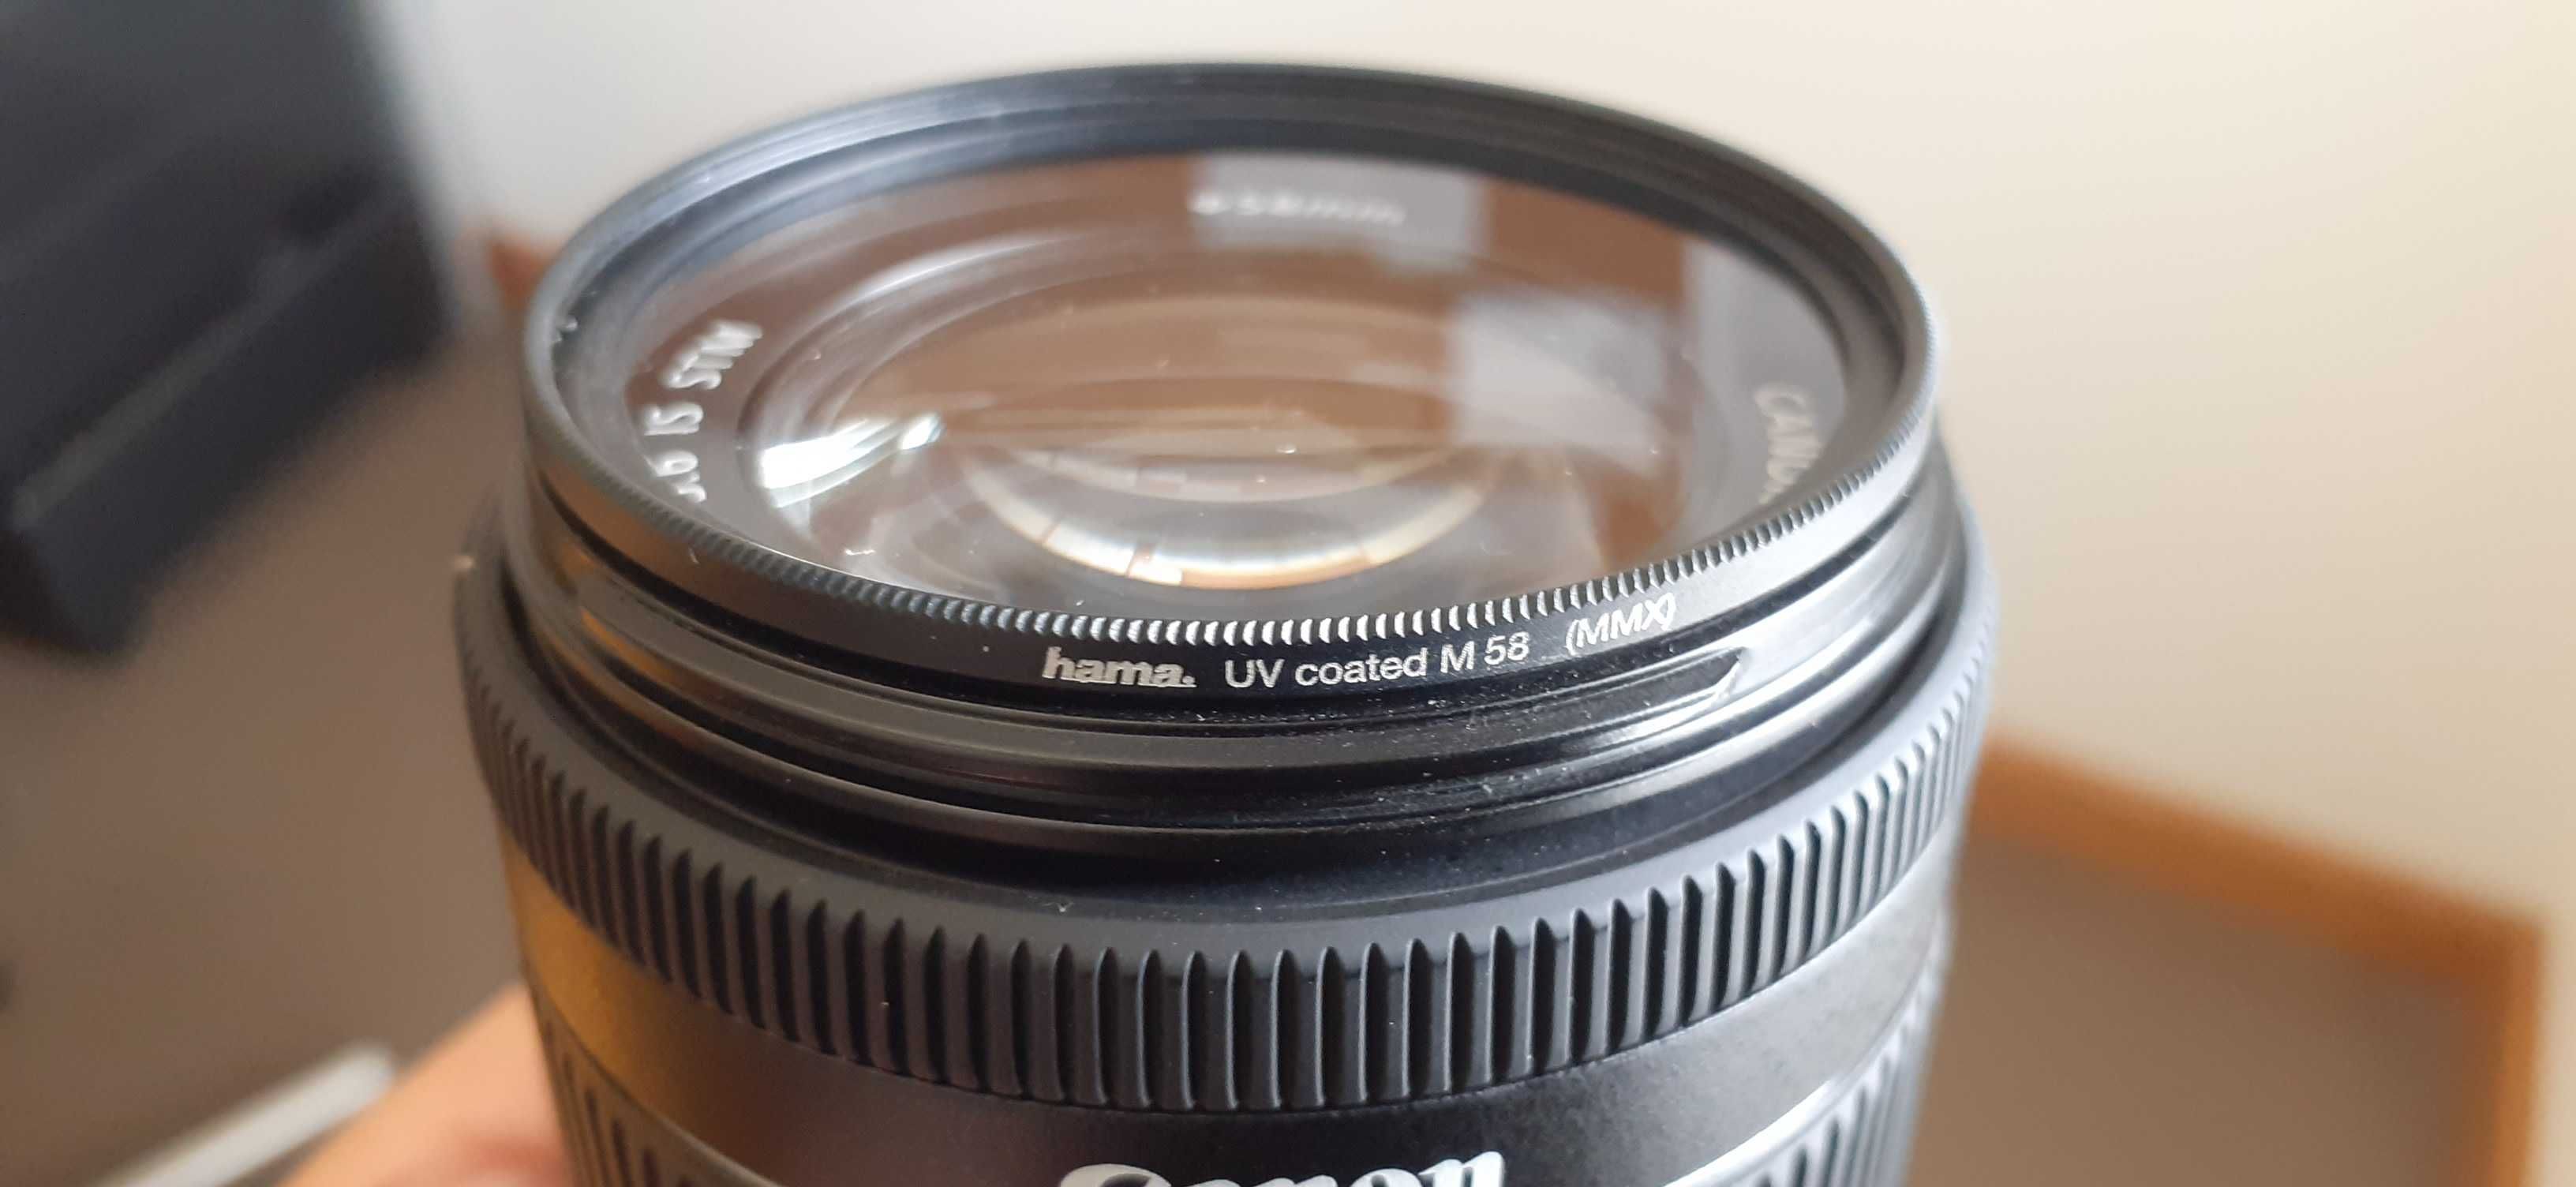 Canon EOS 750D + lente 18-55mm IS STM | Equipamento como novo